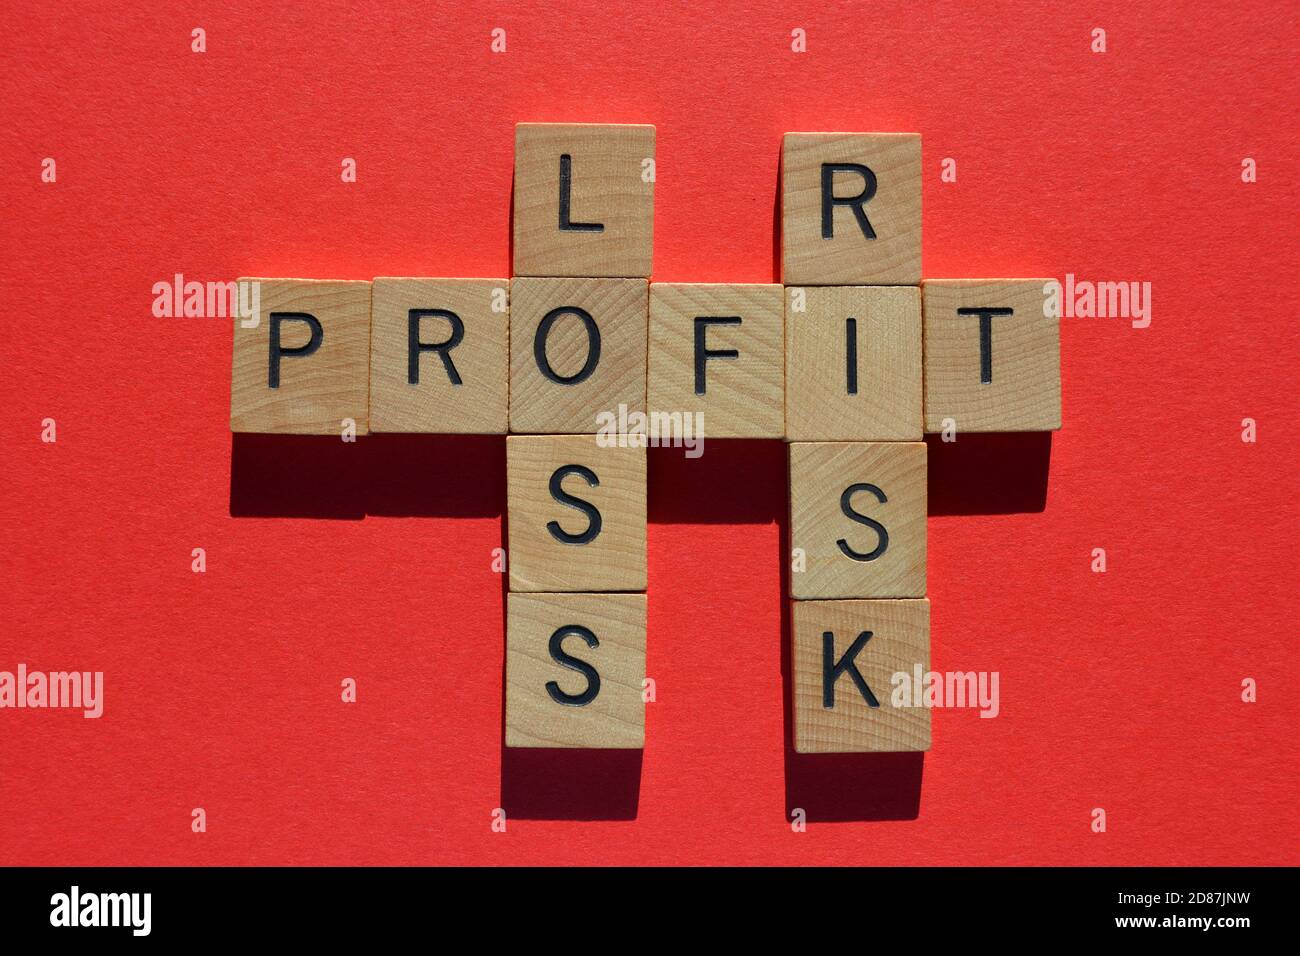 Profit, perte, risque, mots en mots croisés isolés sur fond rouge Banque D'Images